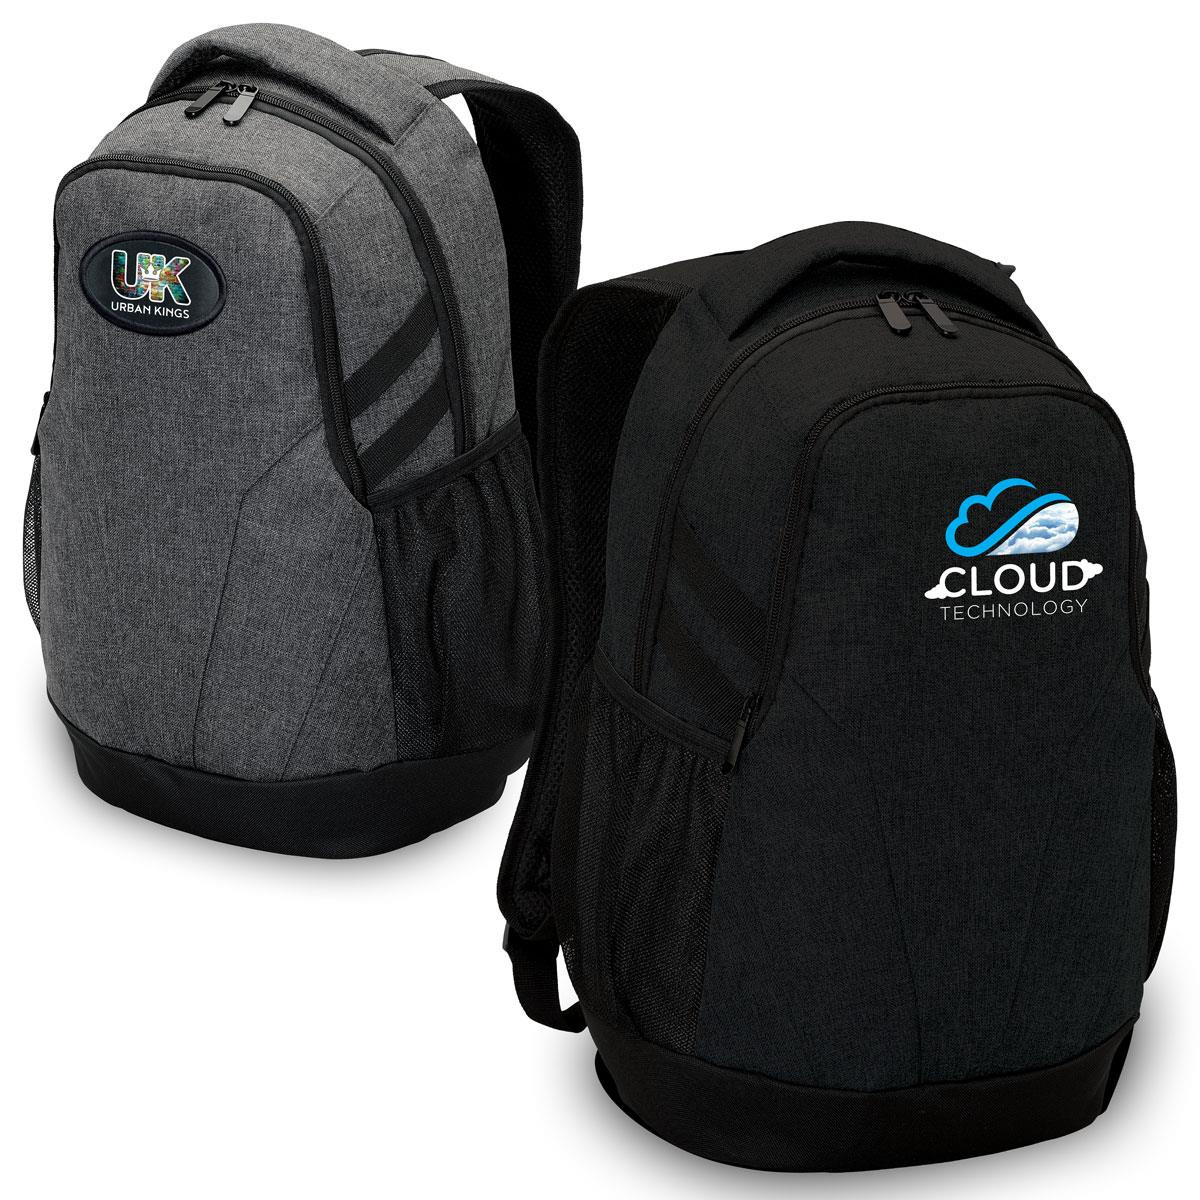 Enterprise Laptop Backpack